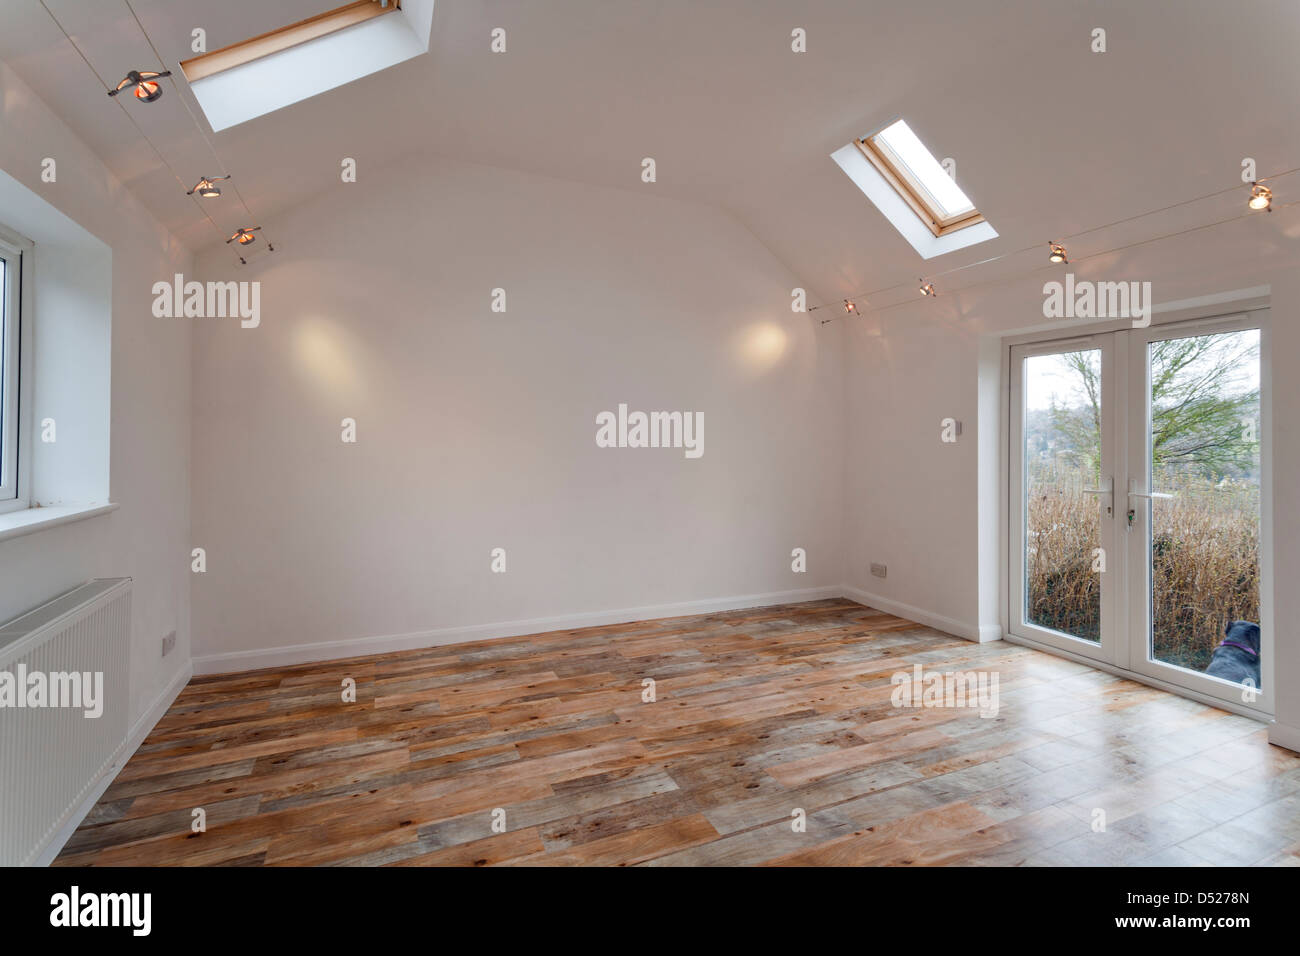 Eine große neue unbesetzt weiß lackiert hohe Decken, leeren Raum mit Velux Dachfenster. Stockfoto